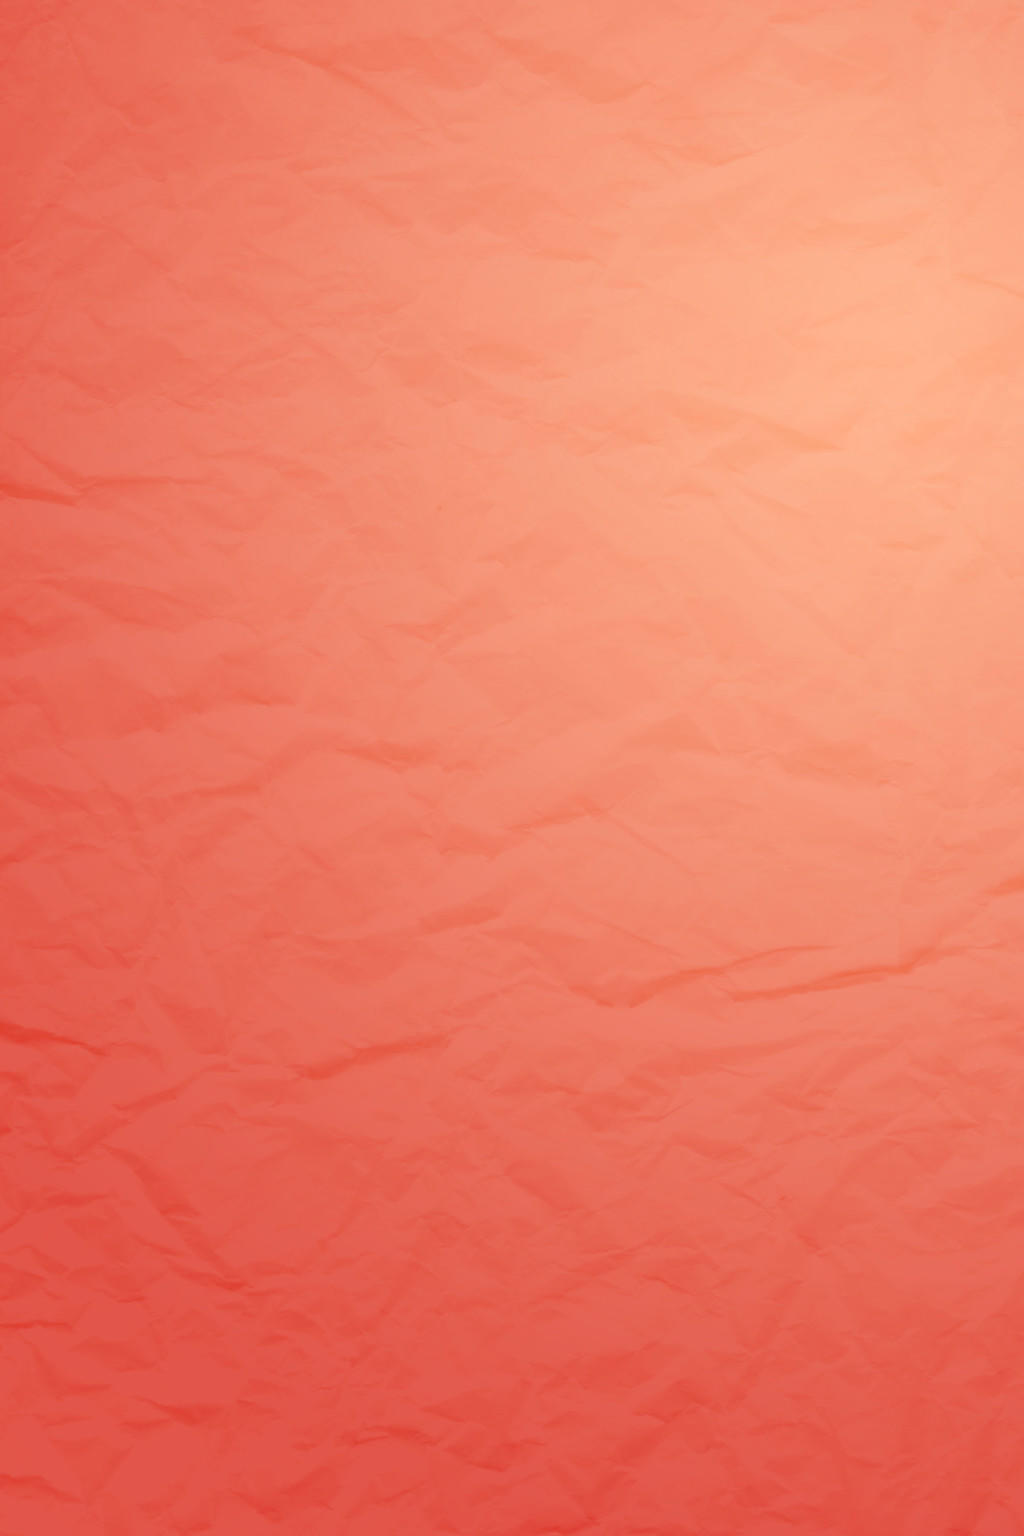 橘红色纹理简约大气商务企业文化励志宣传标语海报背景